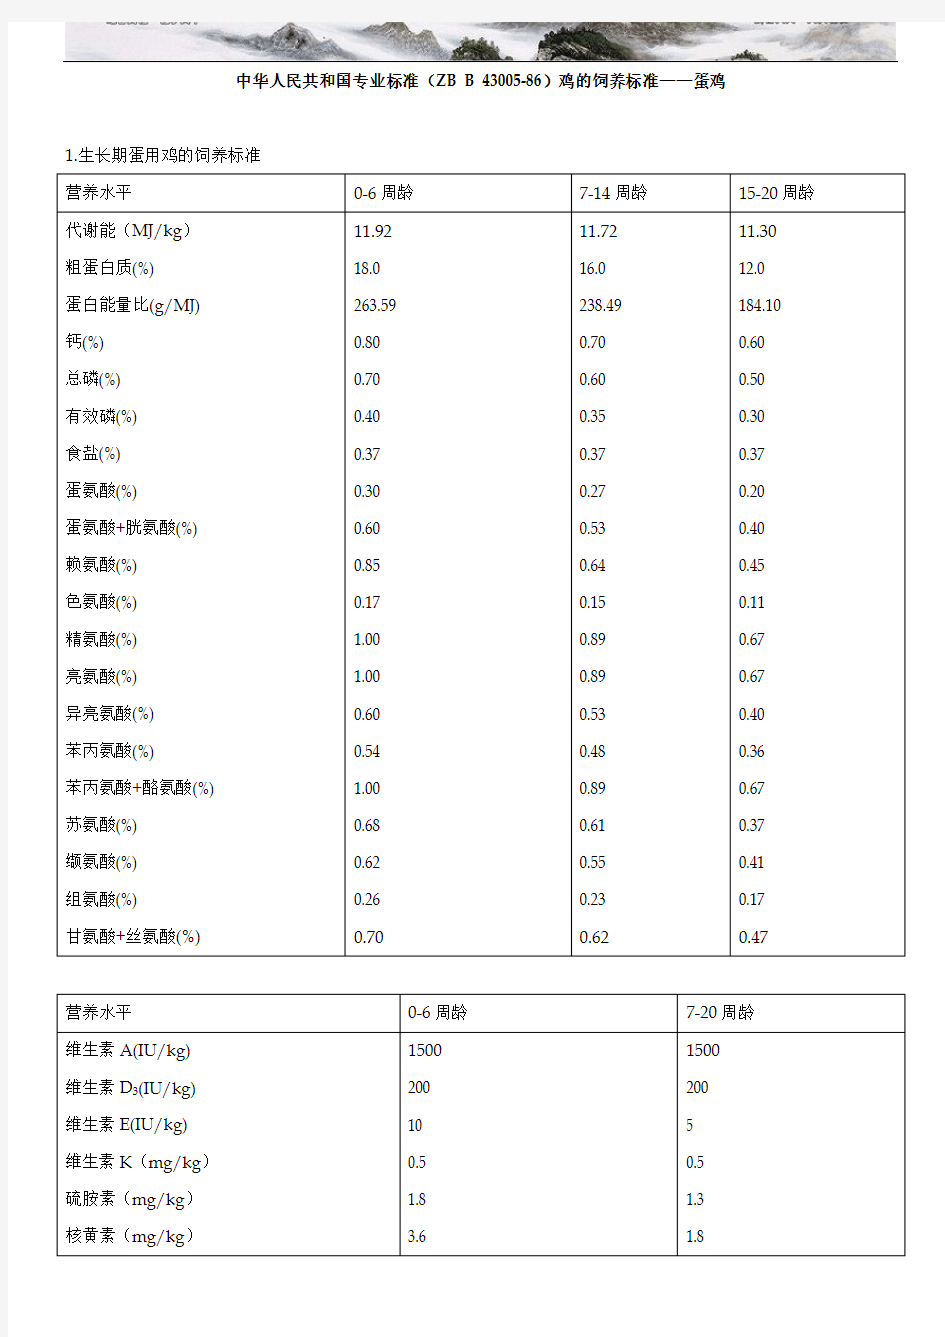 中华人民共和国专业标准(ZB B 43005-86)鸡的饲养标准——蛋鸡